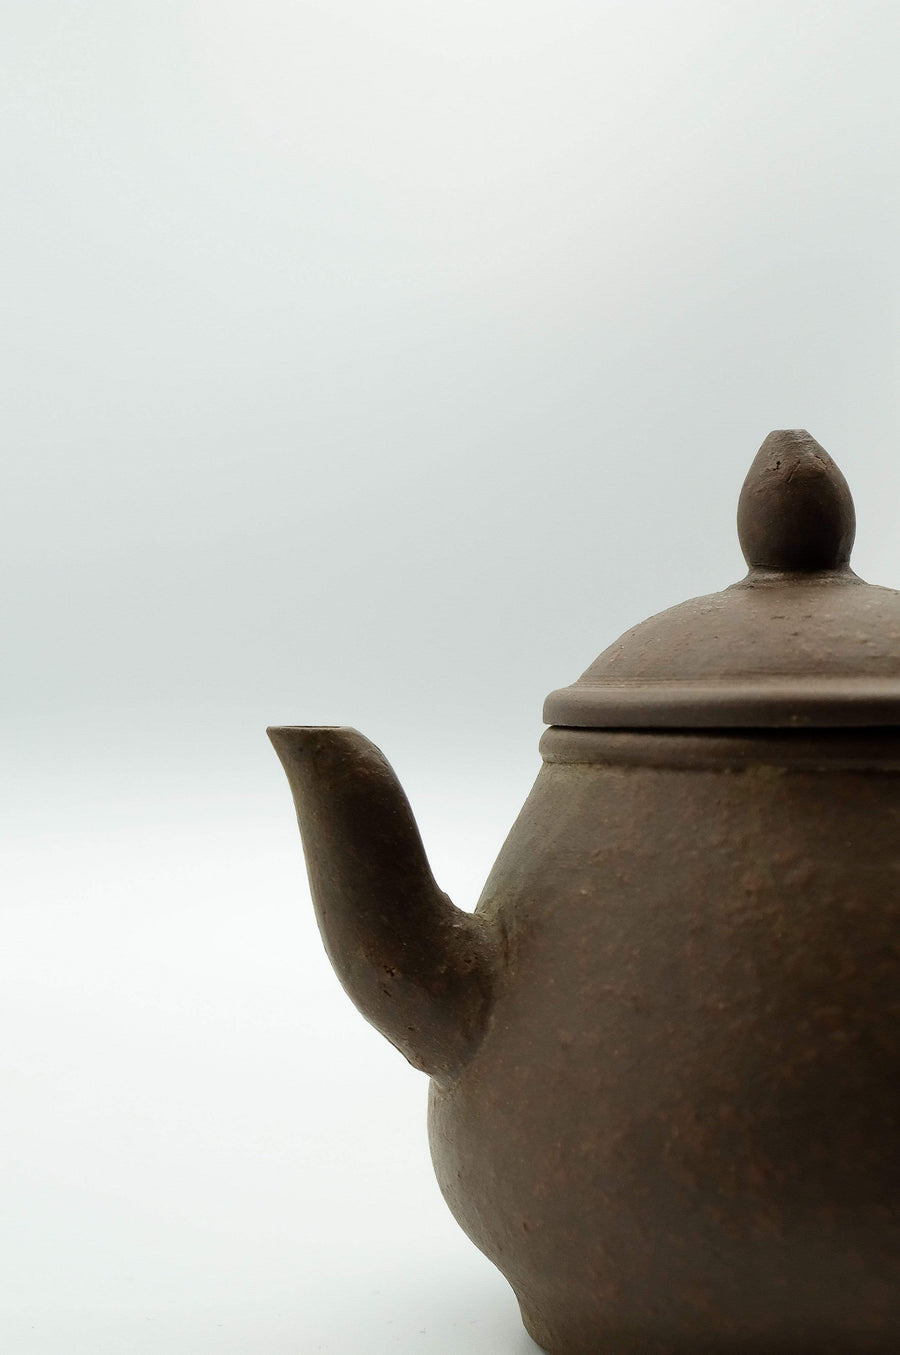 Xian Piao Teapot - Qing Dynasty